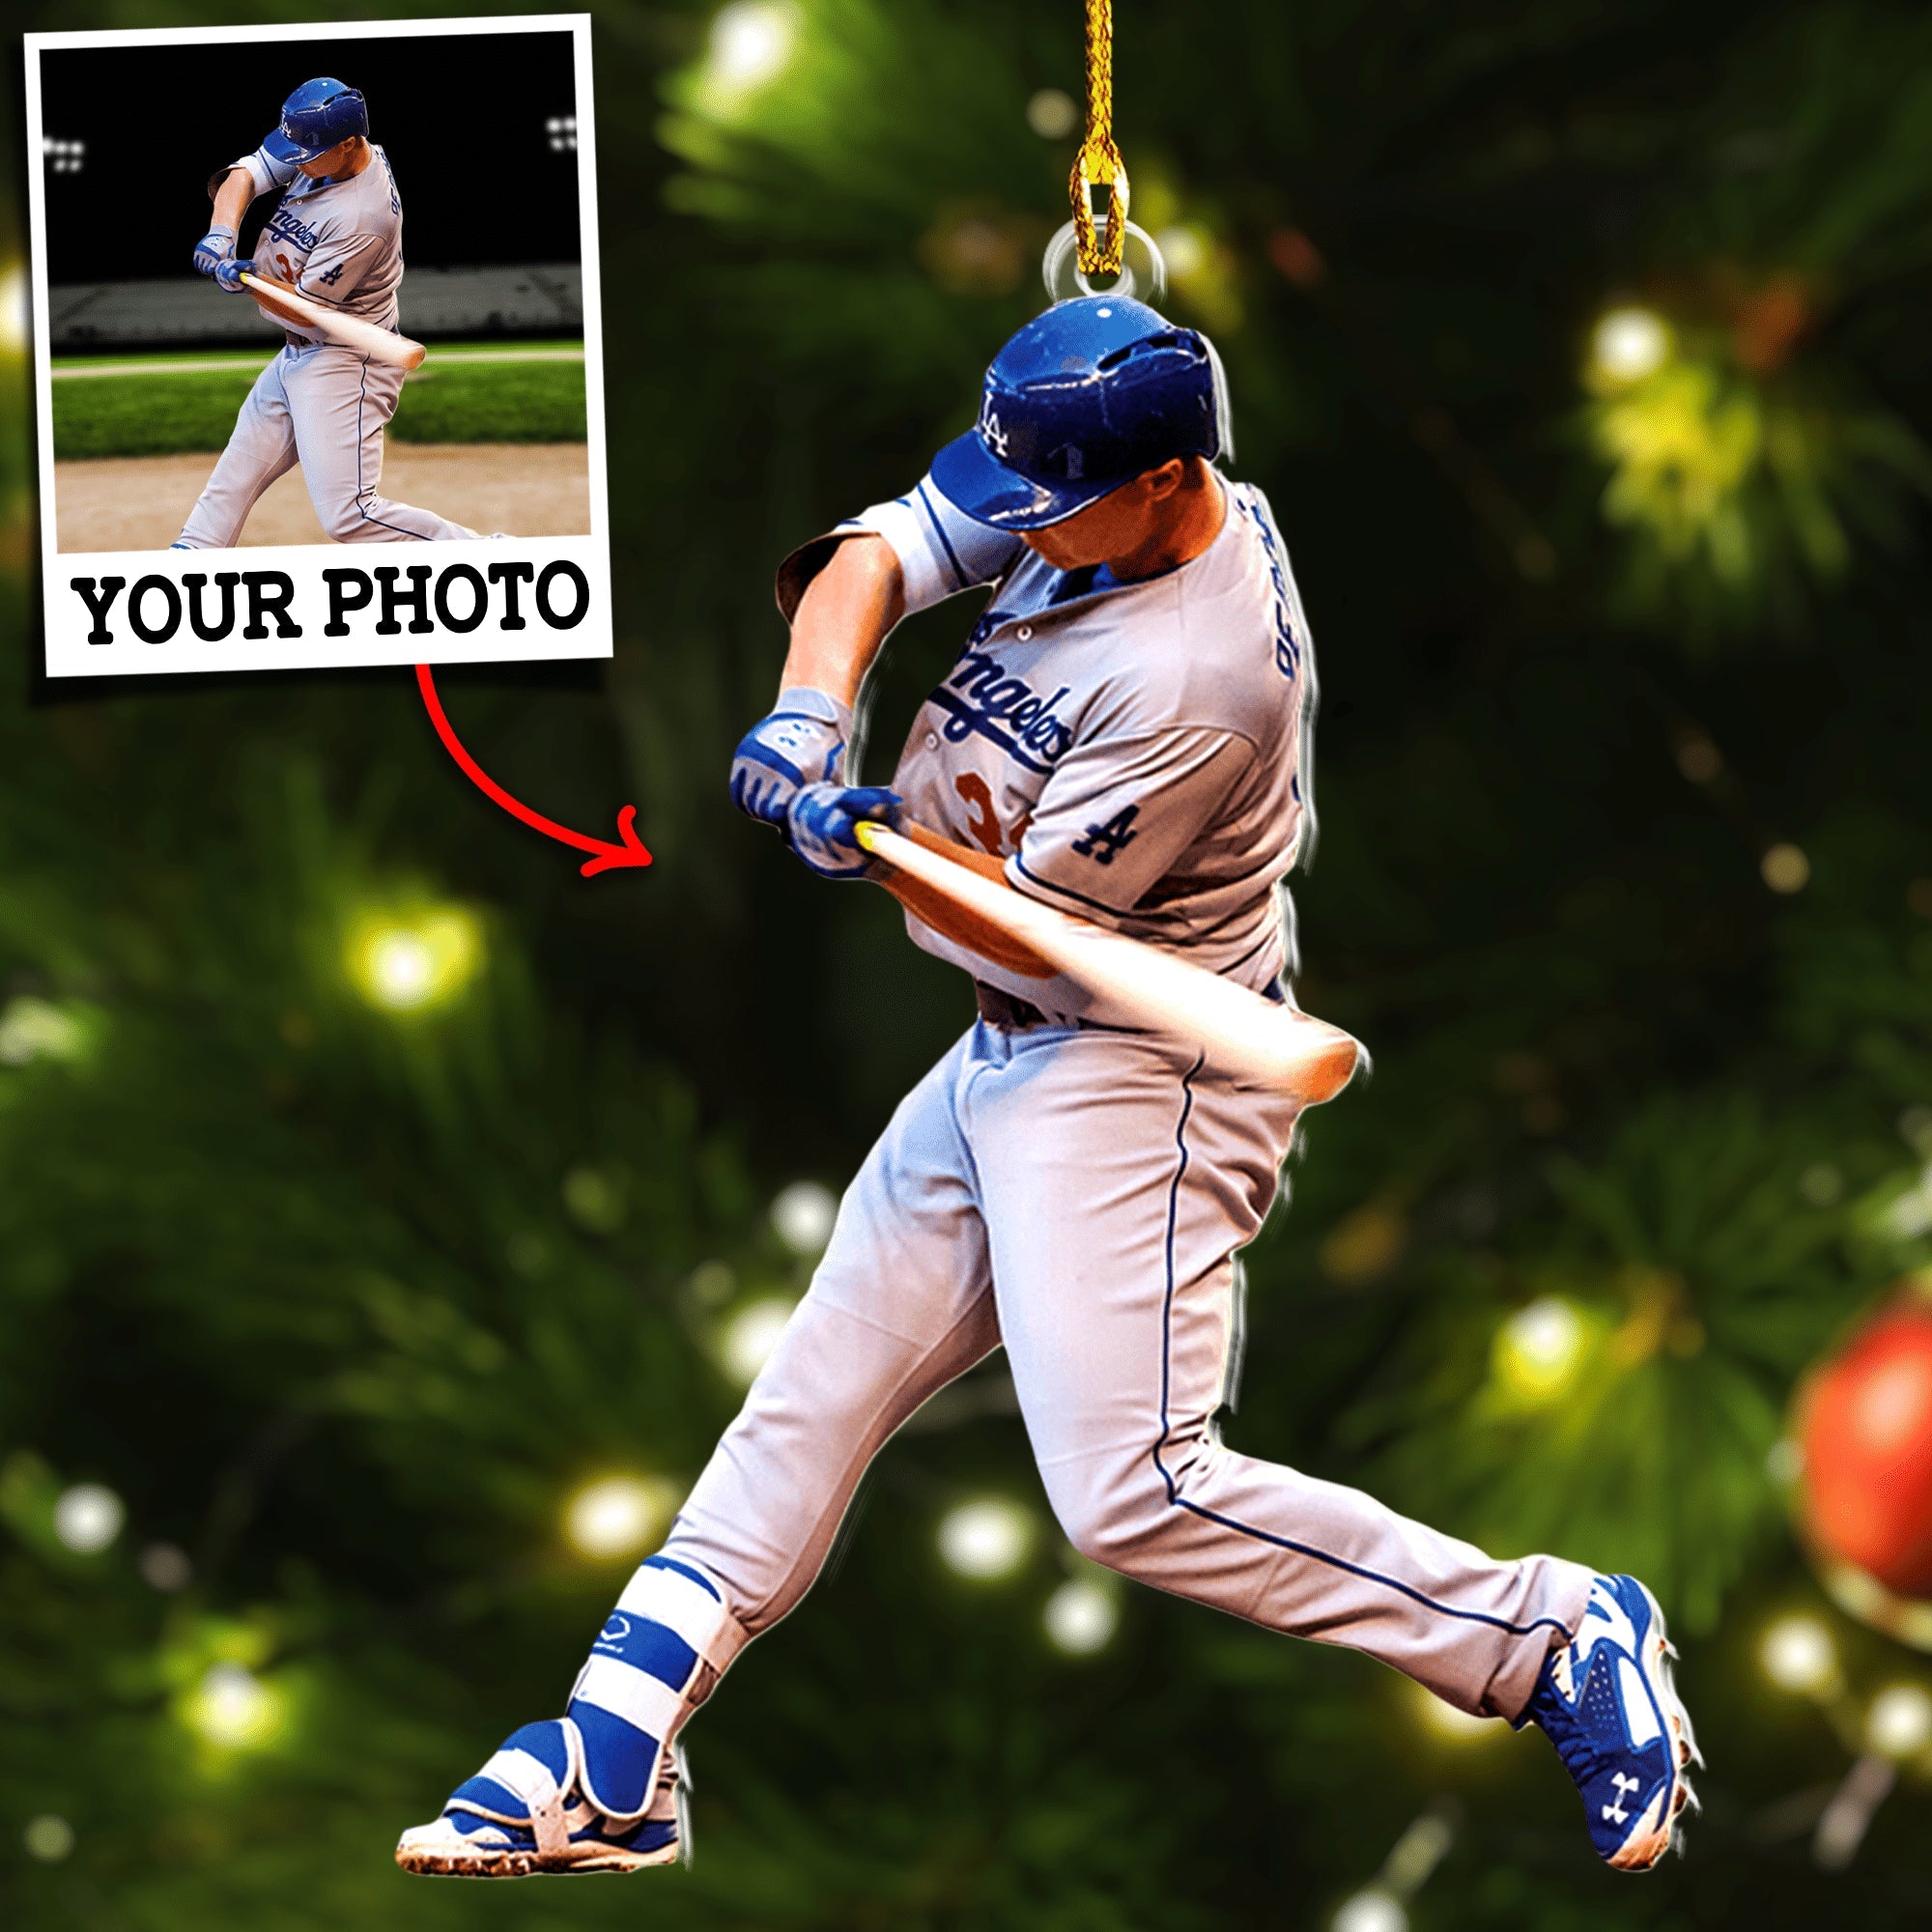 Custom Photo Ornament Gift For Baseball Player - Personalized Photo Ornament Gift For Baseball Lovers - Baseball Team Ornament